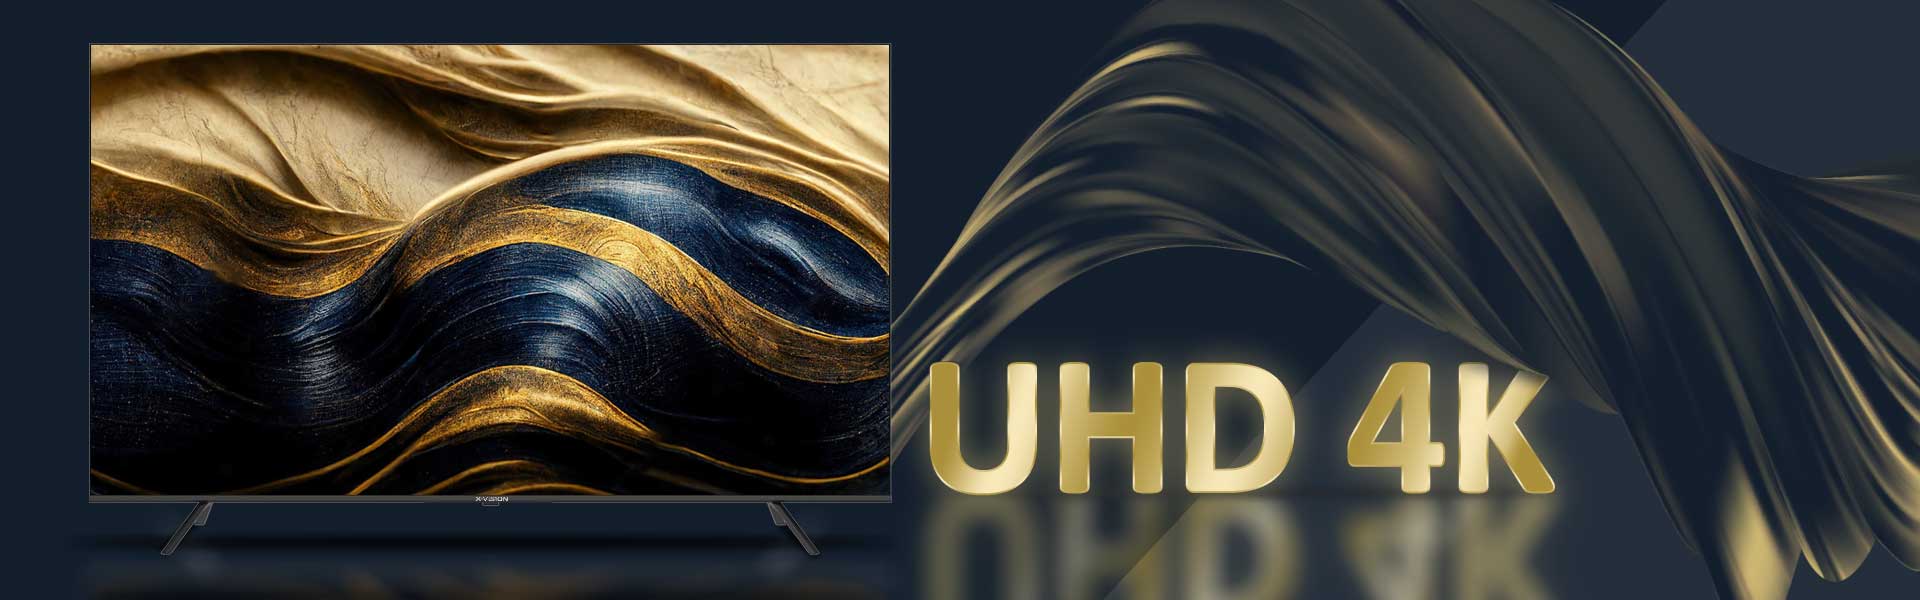 کیفیت تصویر UHD 4K